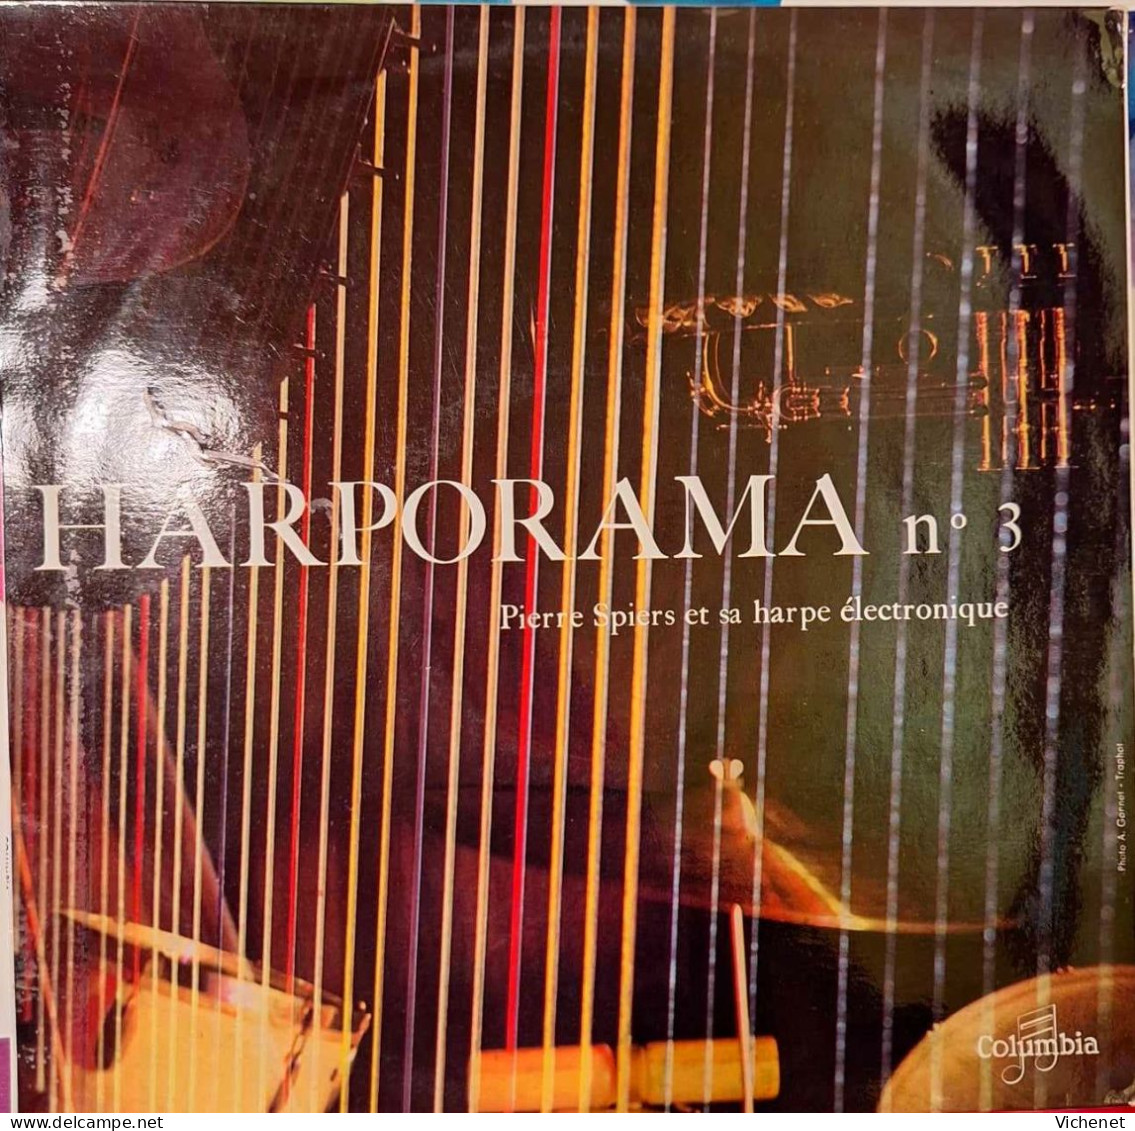 Pierre Spiers Et Sa Harpe Electronique - Harporama N° 3 - 25 Cm - Formatos Especiales